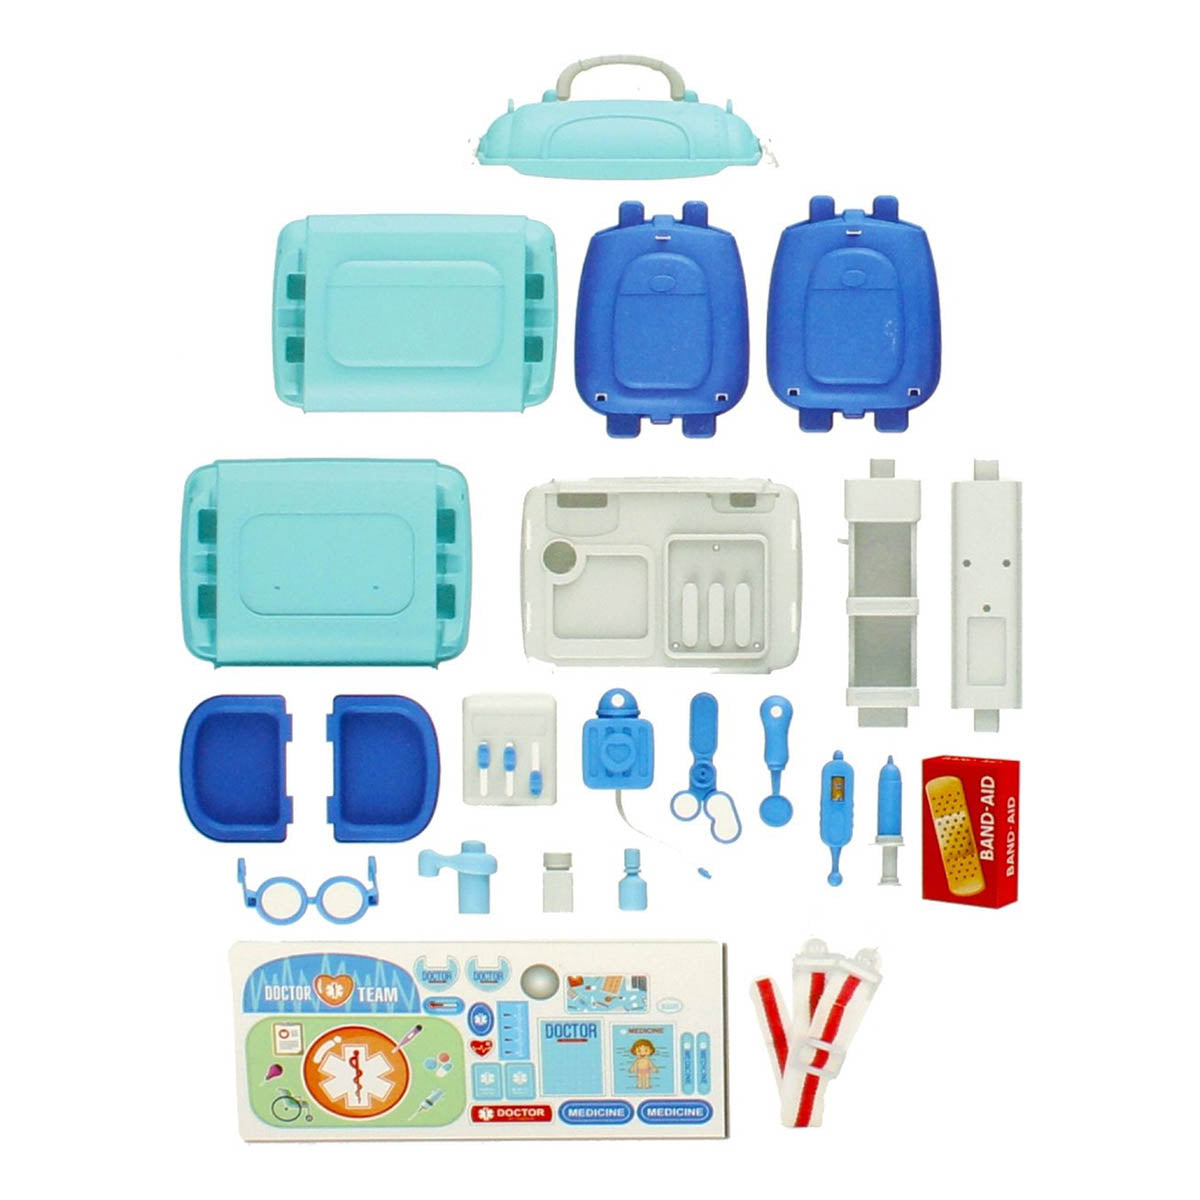 Ariko Spielzeugkoffer Doctor 23 Teile - Blutdruckmessgerät, Schere, Medikamente, Untersuchungsutensilien und vieles mehr - praktischer Tragekoffer